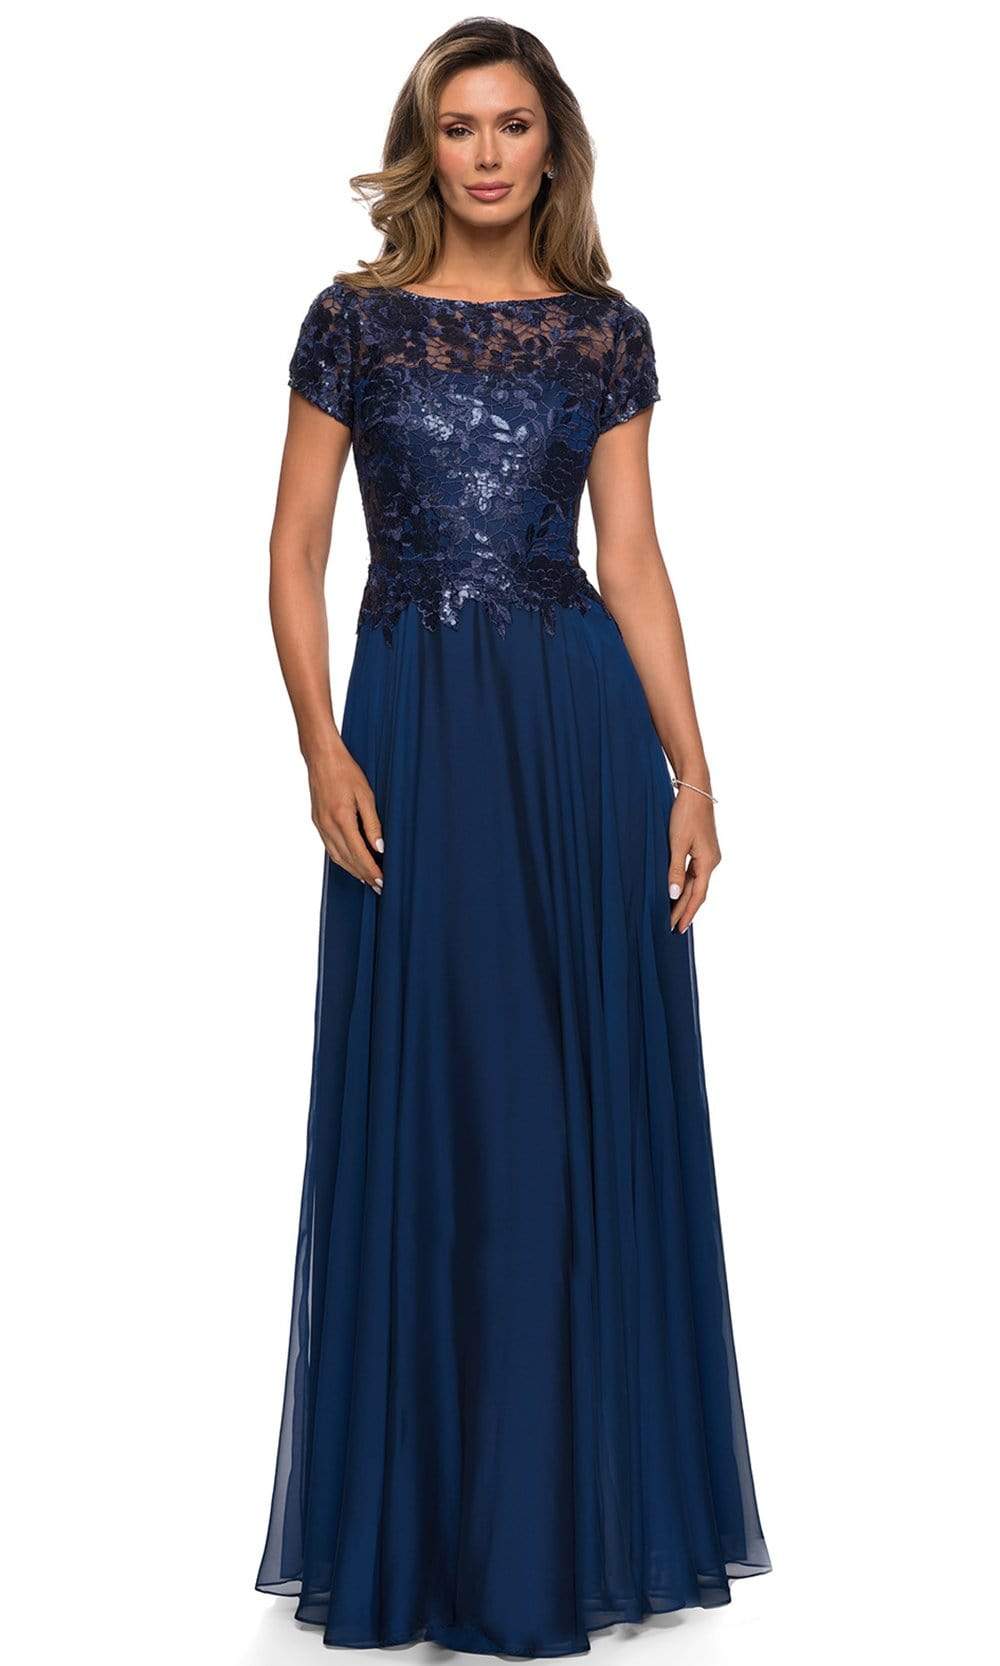 La Femme - 27924 Sequined Lace Bodice A-Line Dress